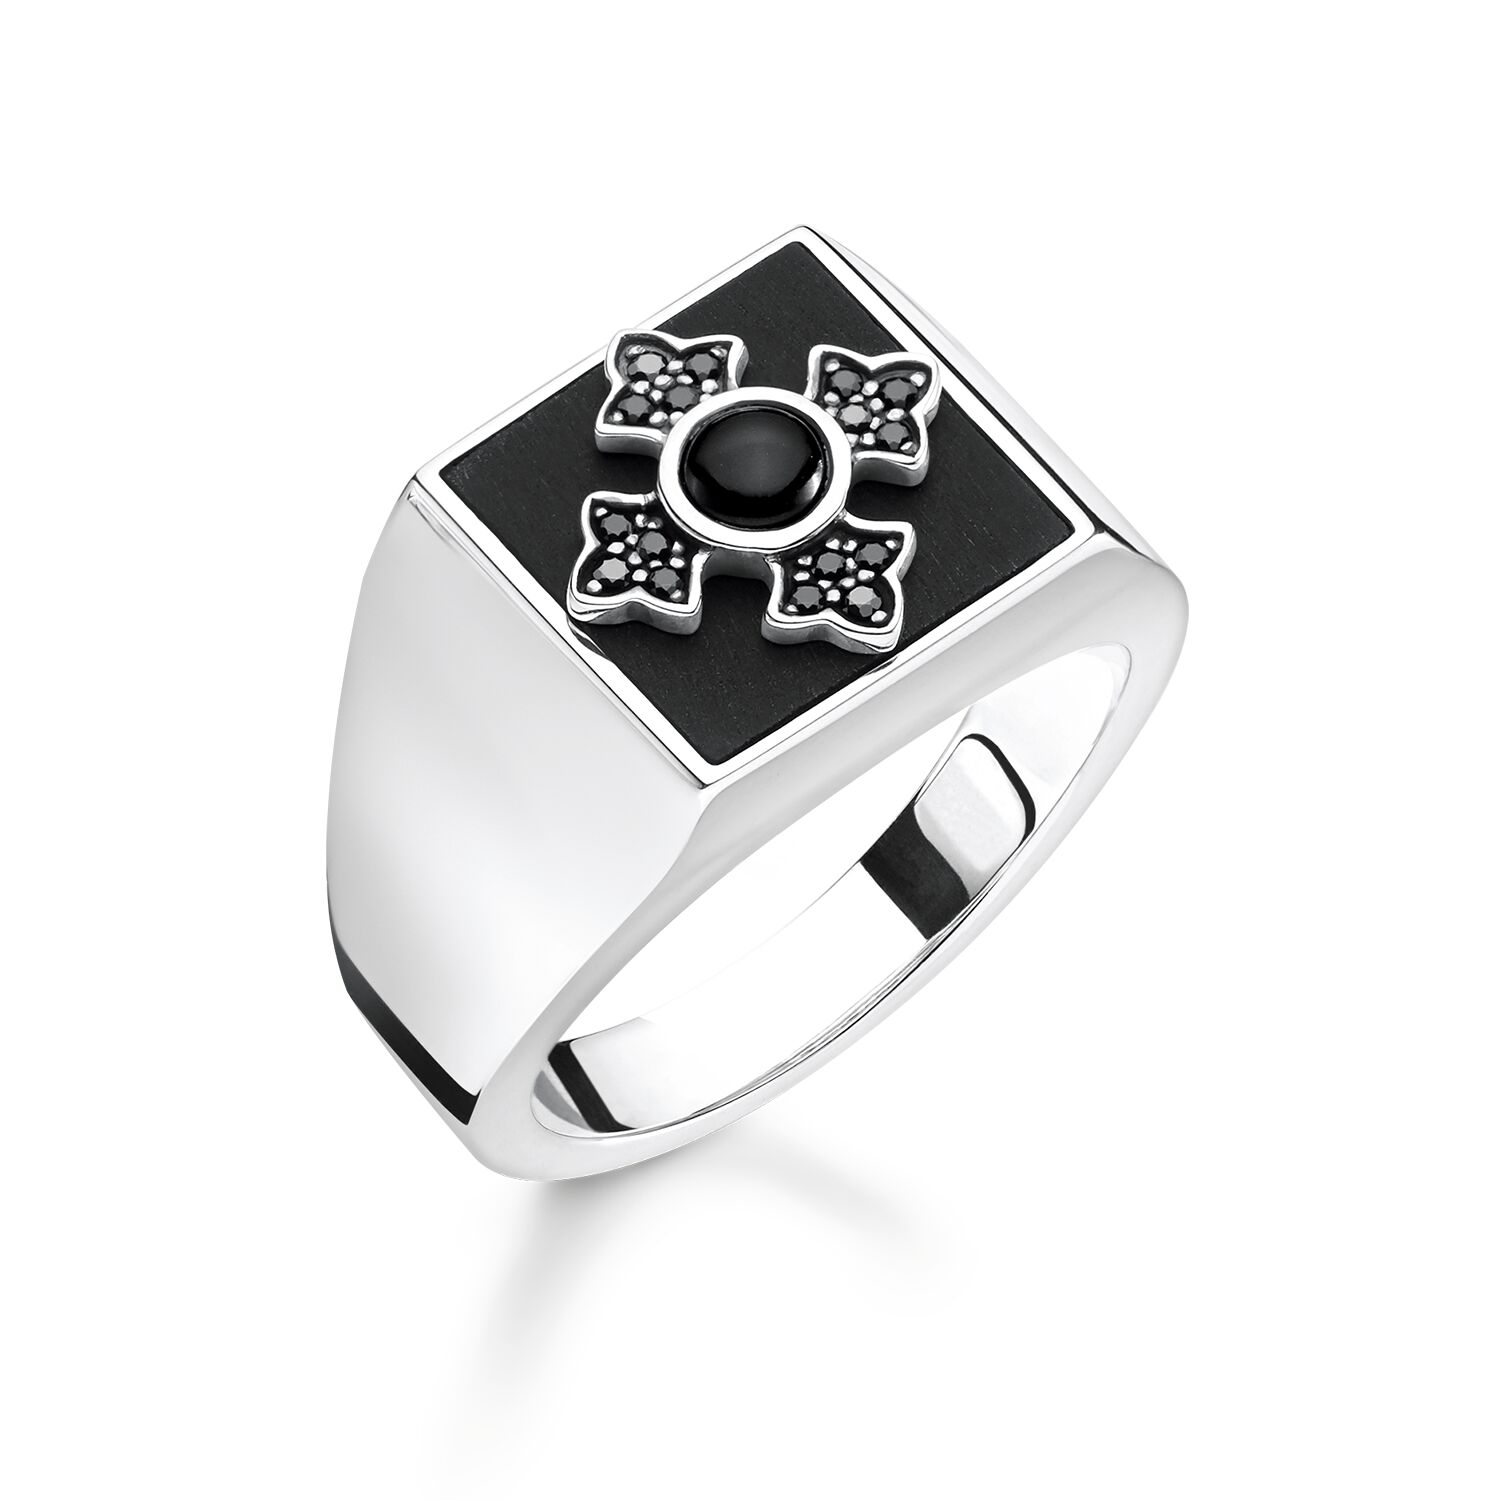 Оптовое индивидуальное мужское кольцо OEM/ODM ювелирные изделия с гравировкой, производитель ювелирных изделий из серебра 925 пробы